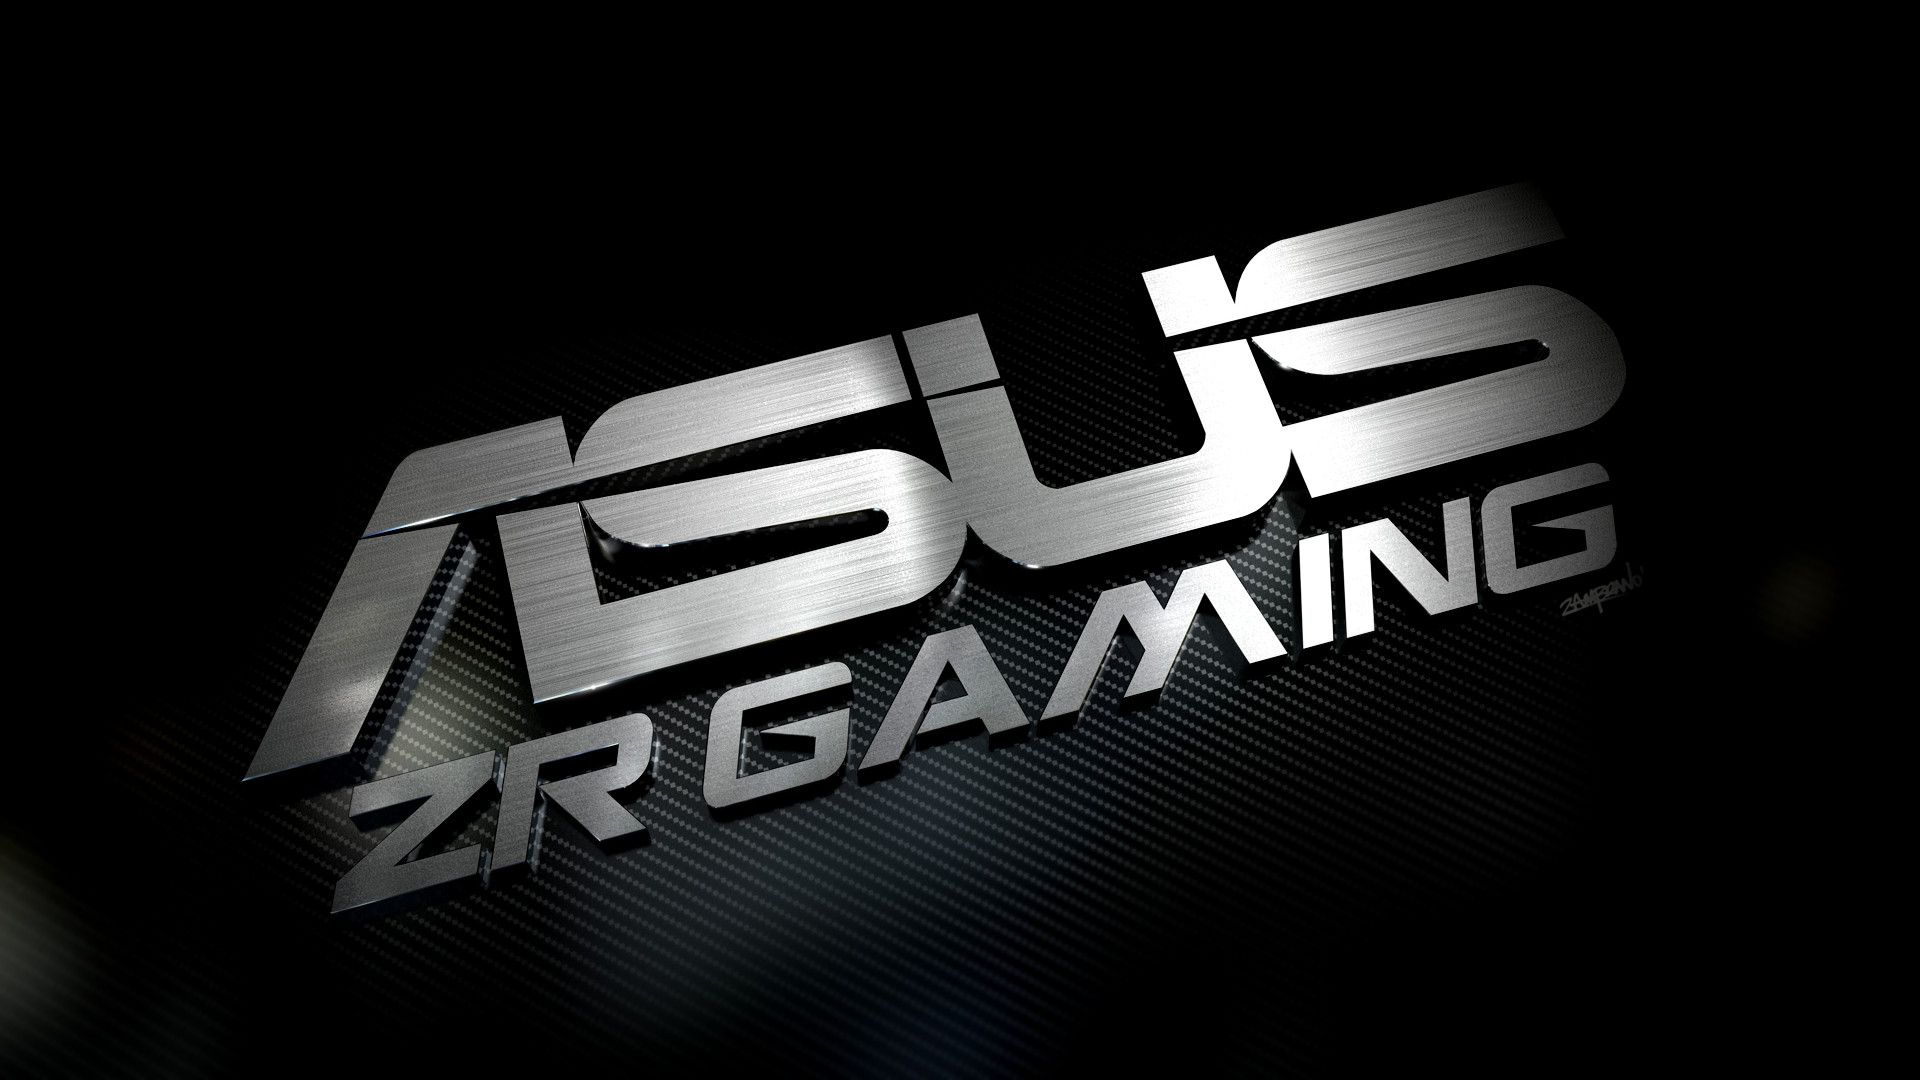 Download Asus Zr Gaming Wallpaper | Full HD Wallpapers